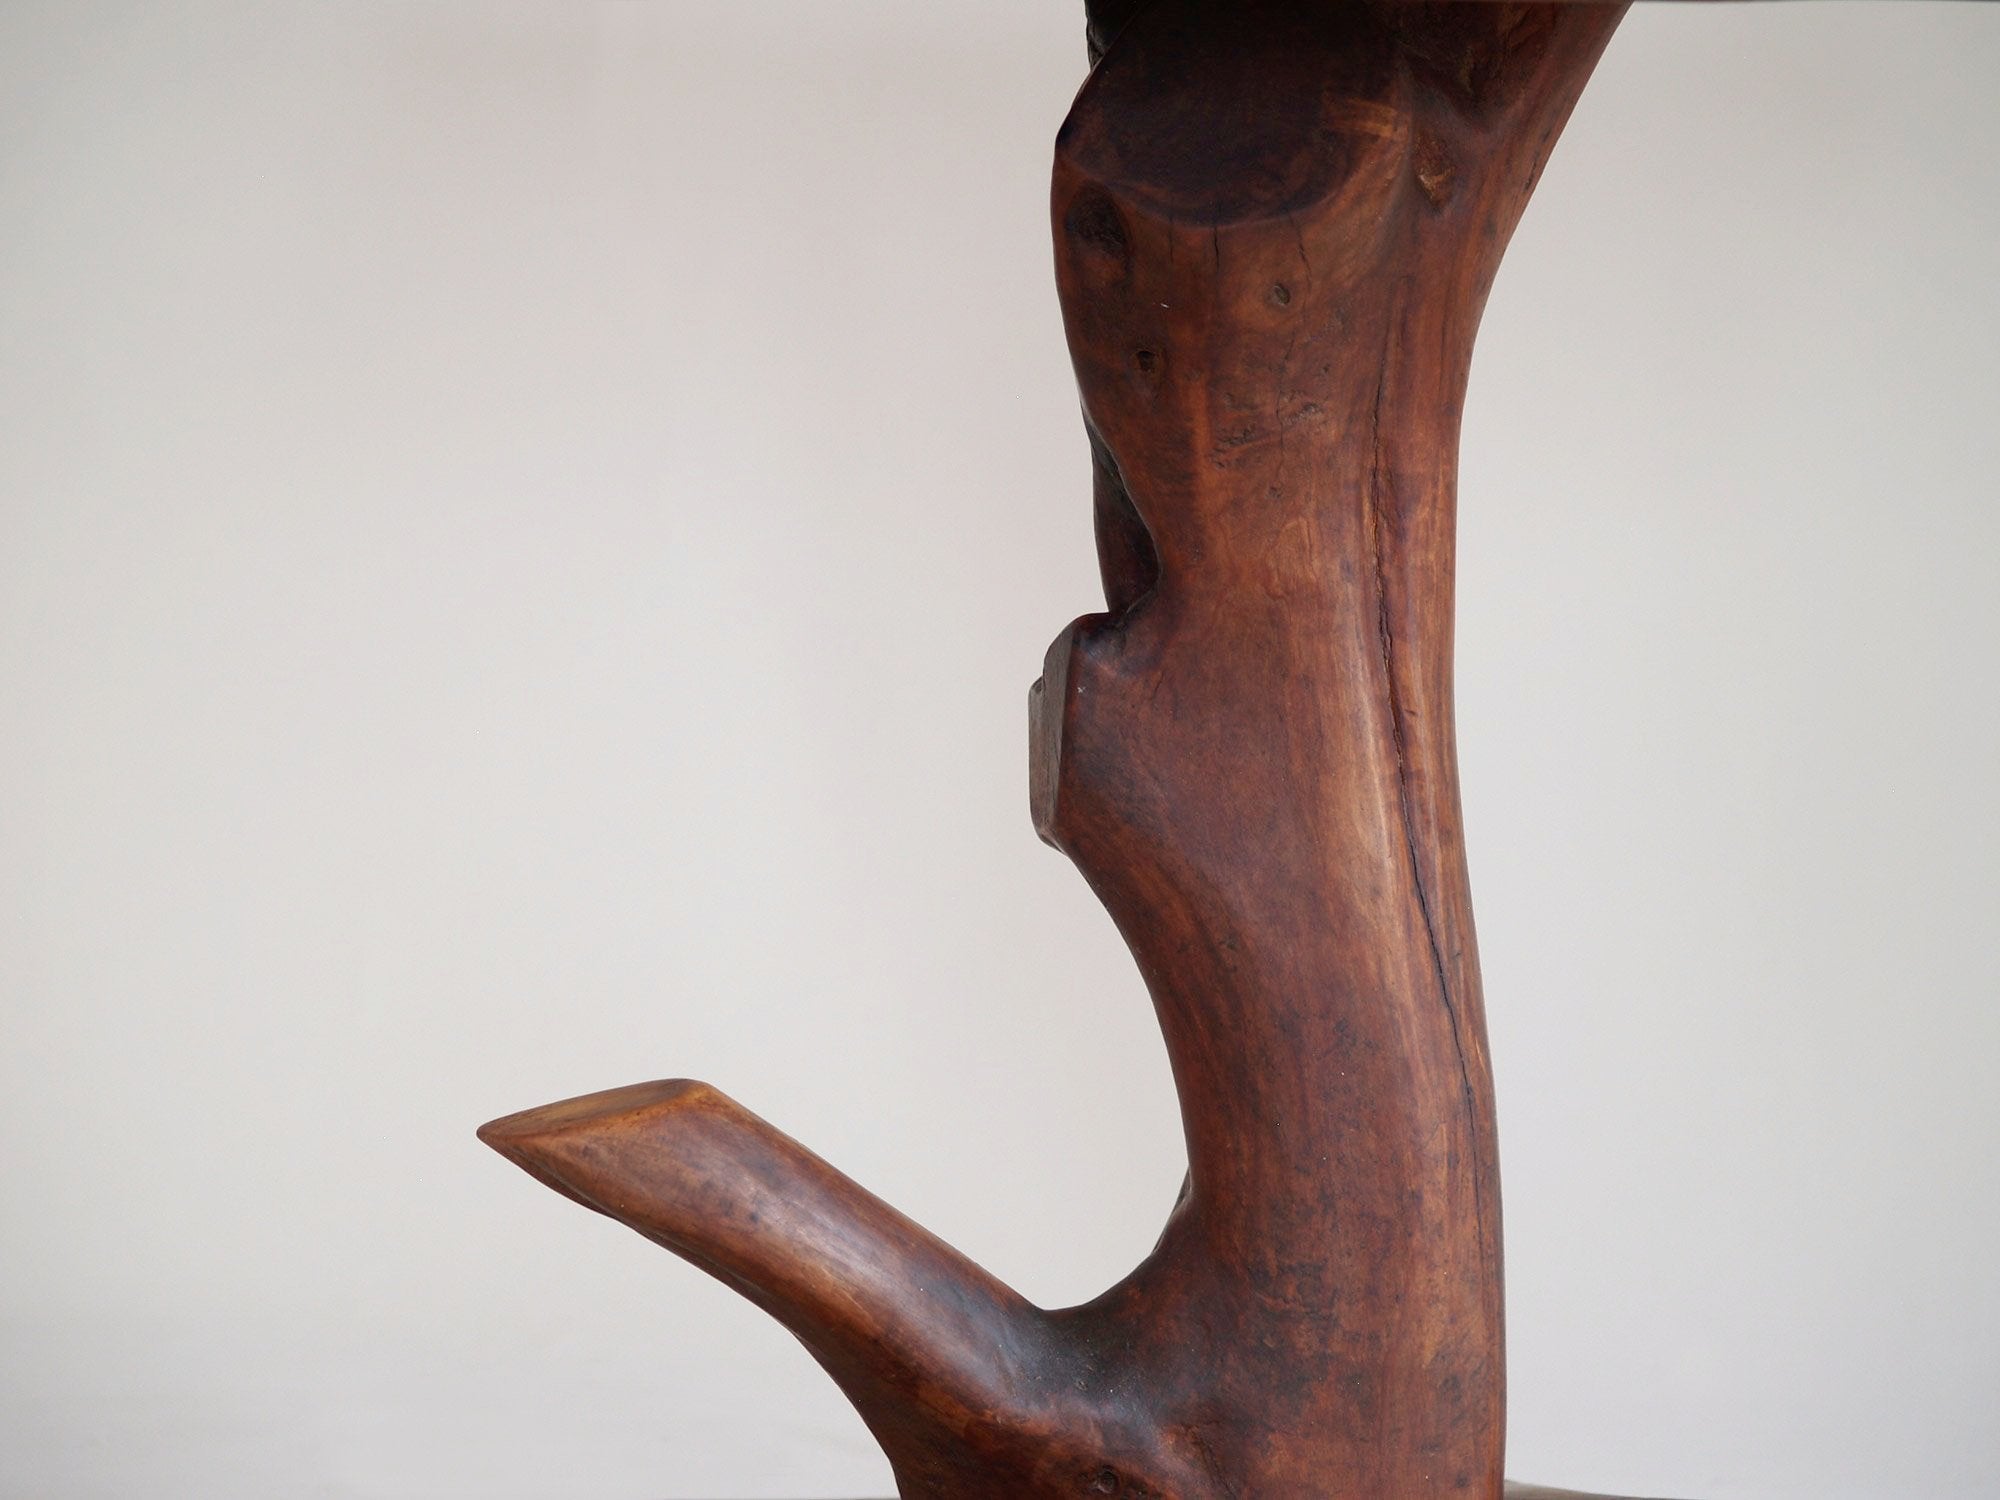 Guéridon "primitiviste" en bois sculpté et céramique par Pol, France (vers 1960).."Primitivist" occasionnal coffee table by Pol, France (circa 1960)